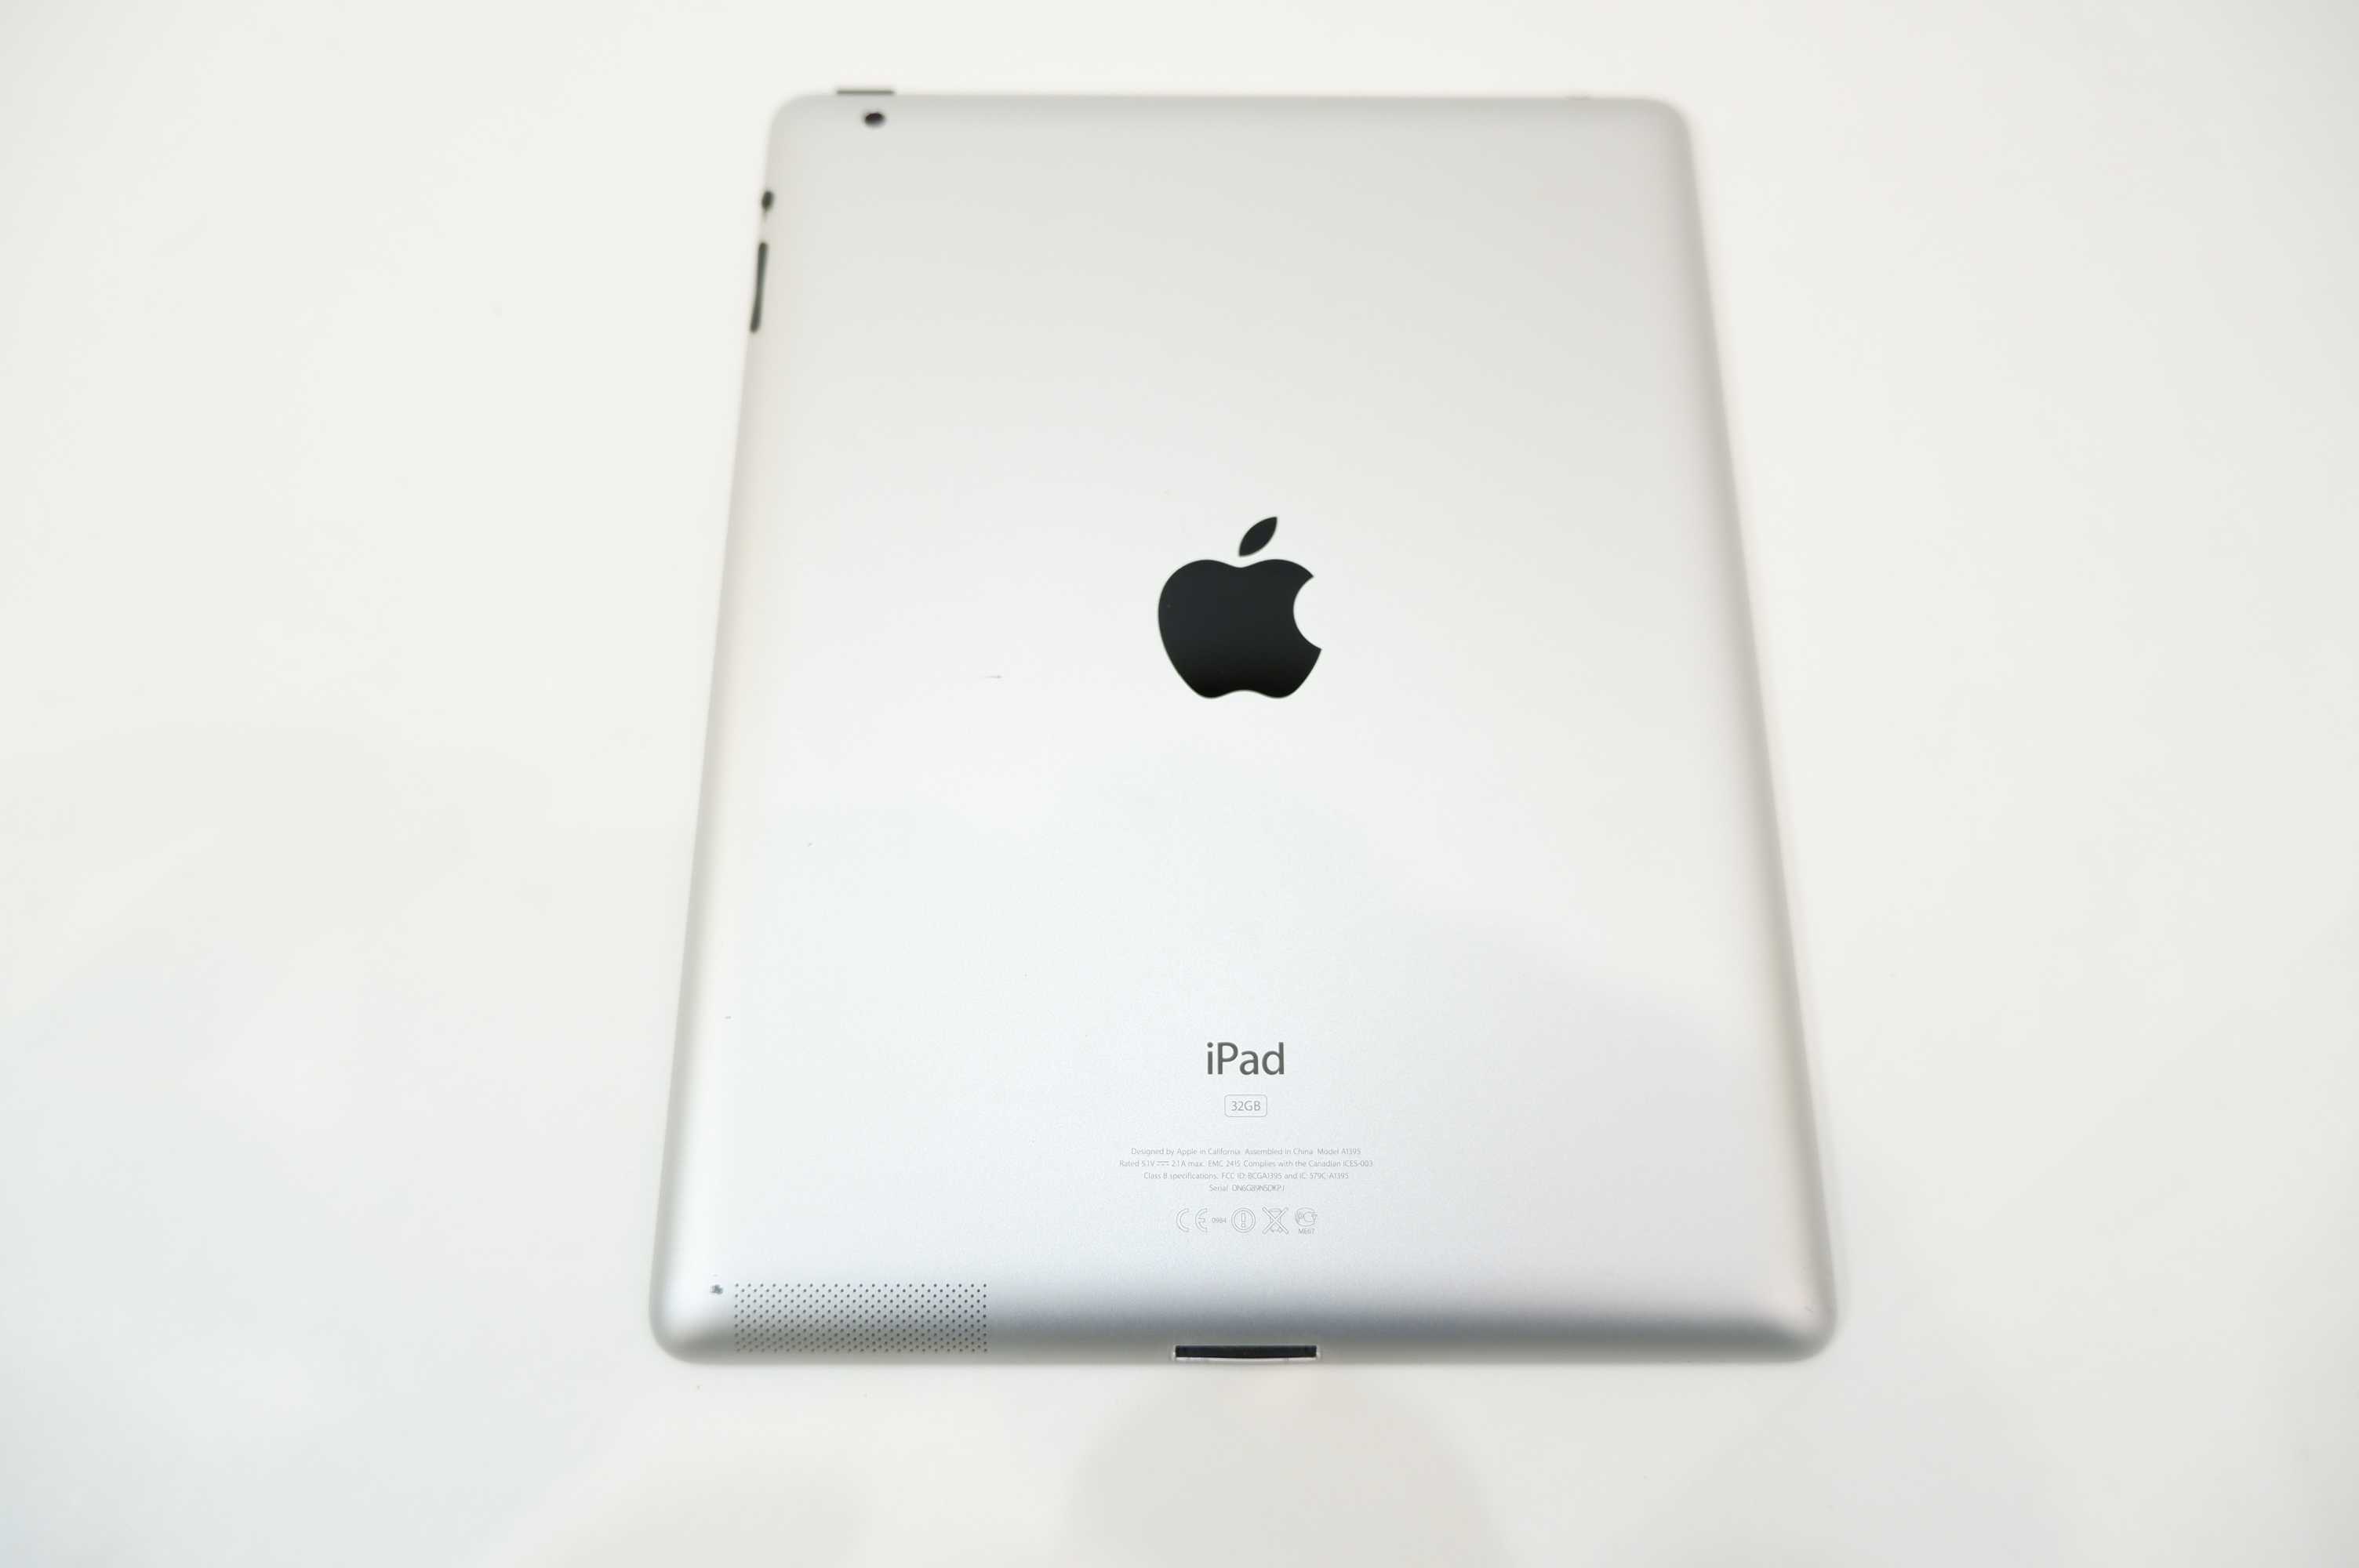 iPad 2 и iPad 3 — одни из самых популярных планшетов Читайте сравнение этих устройств, это поможет определиться с выбором